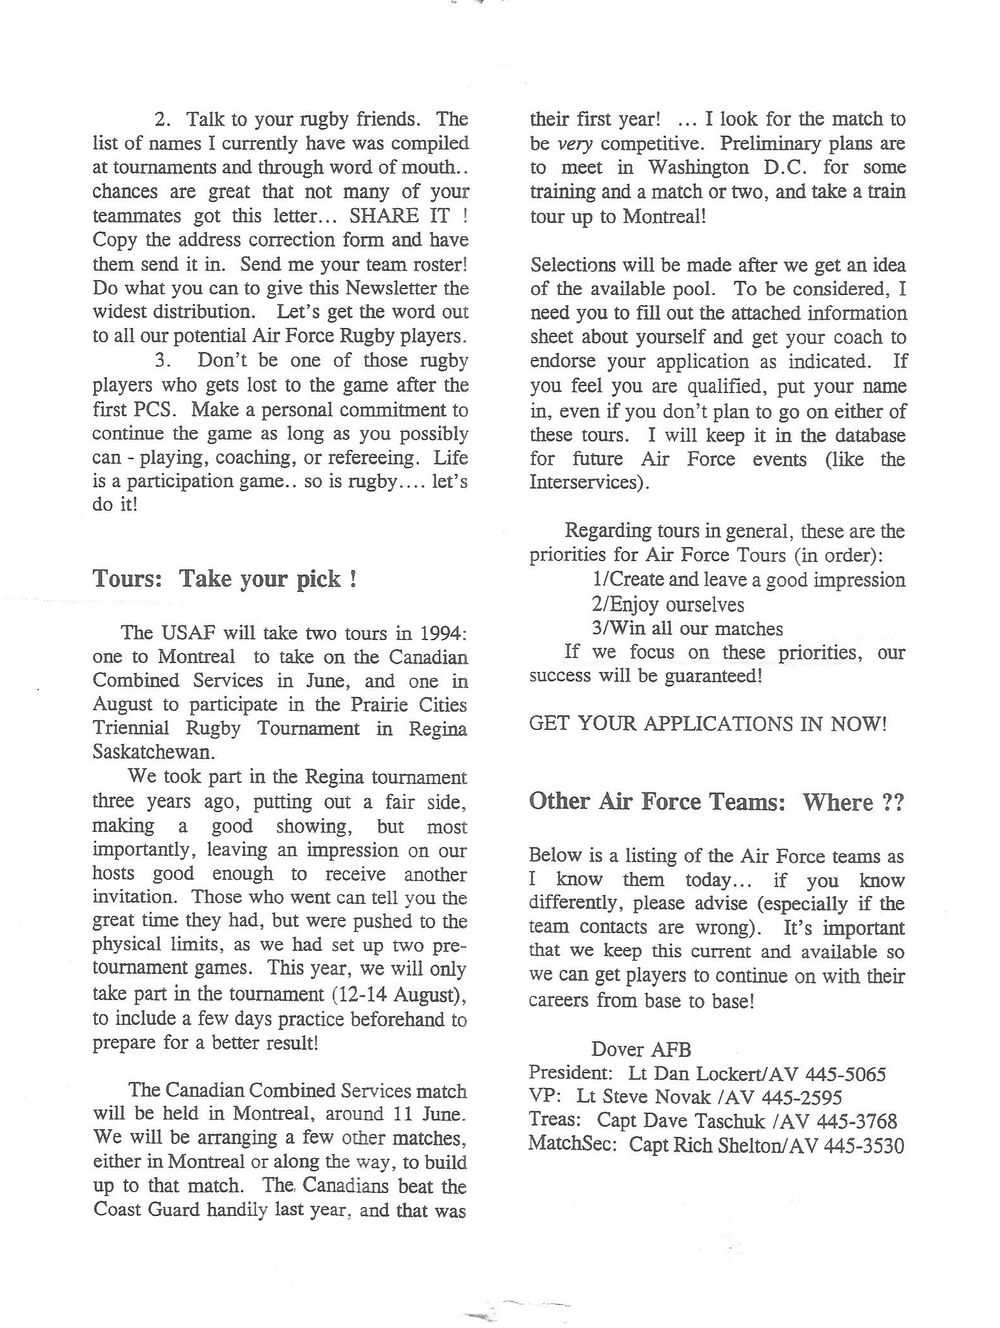 1994 03 Newsletter 4.jpg